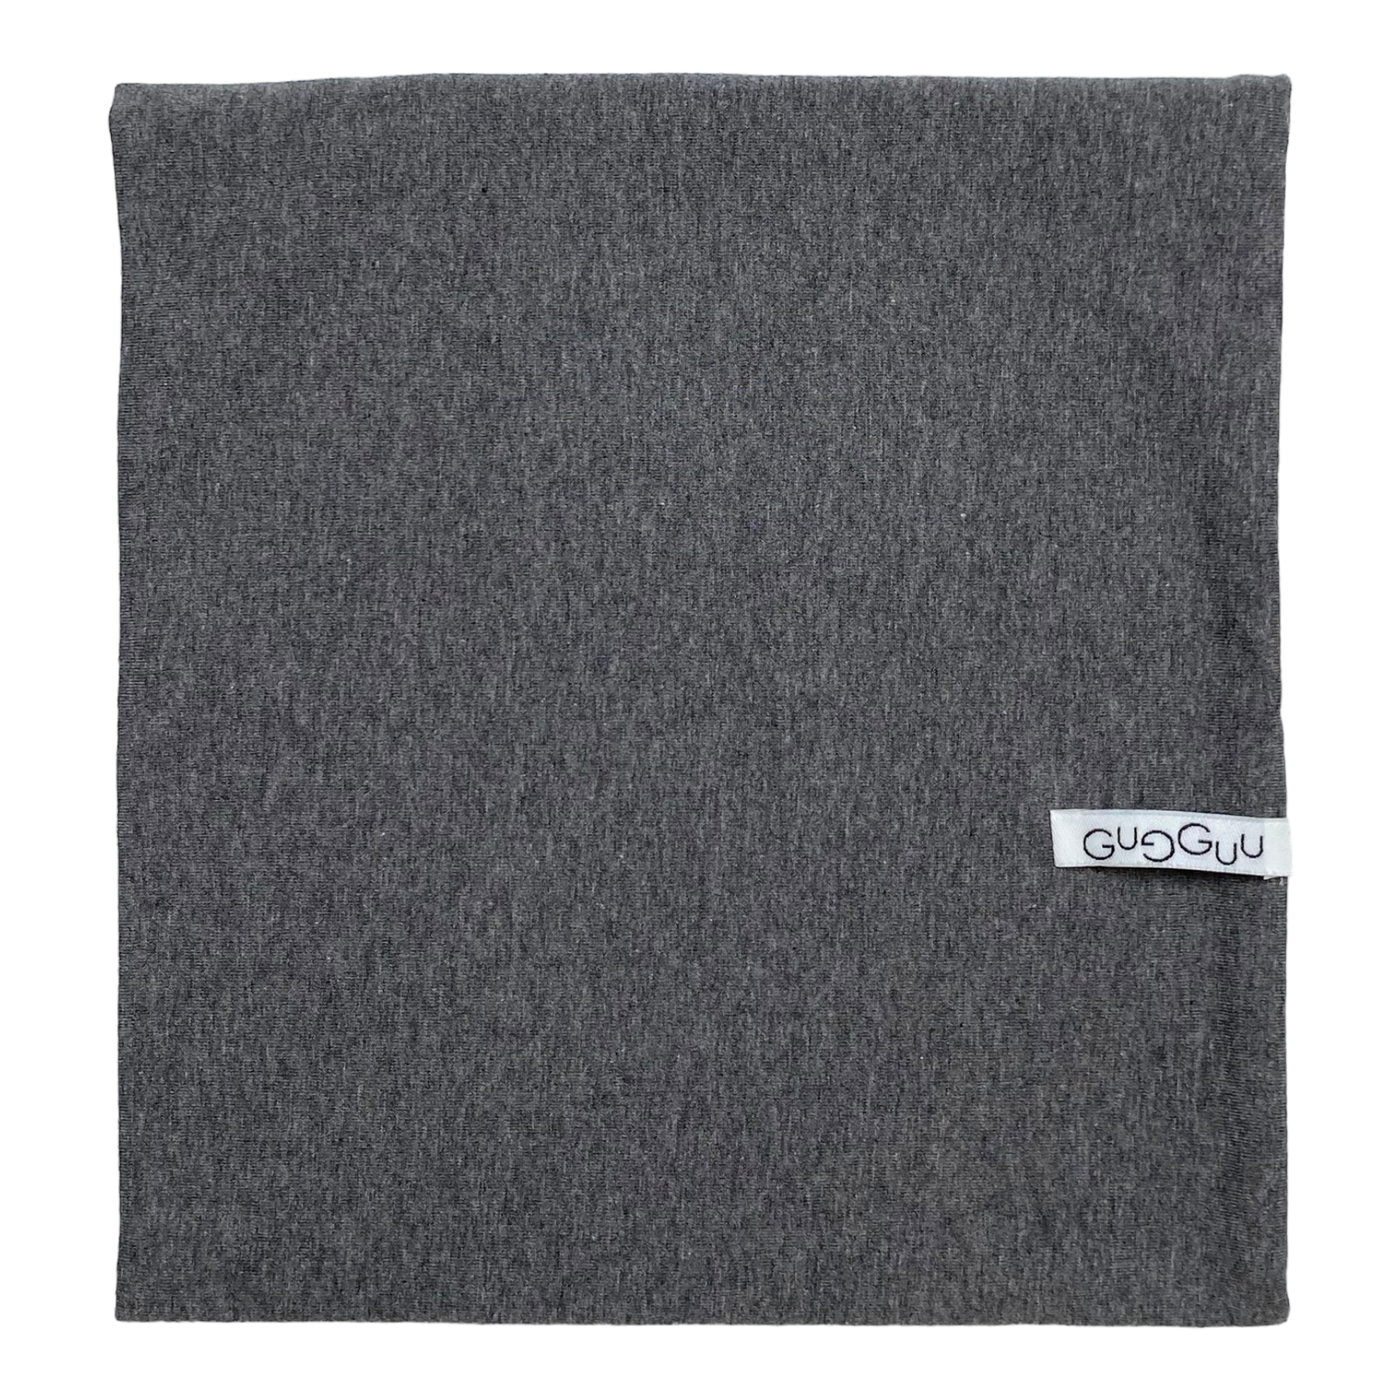 Gugguu beanie and scarf, grey | 45-49cm